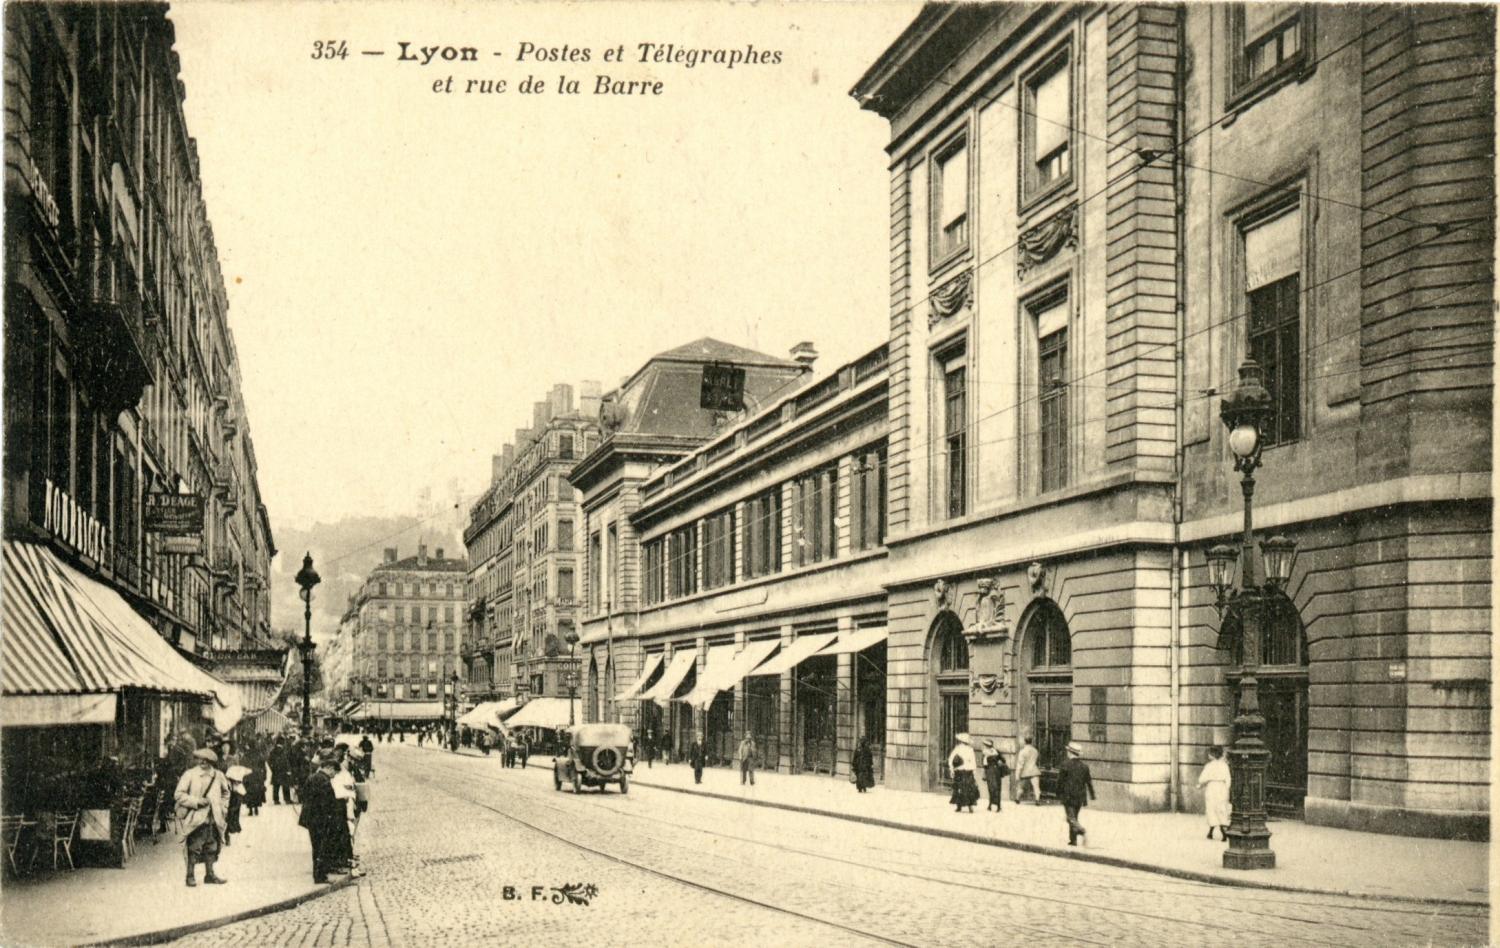 Lyon. - Postes et Télégraphes et rue de la Barre